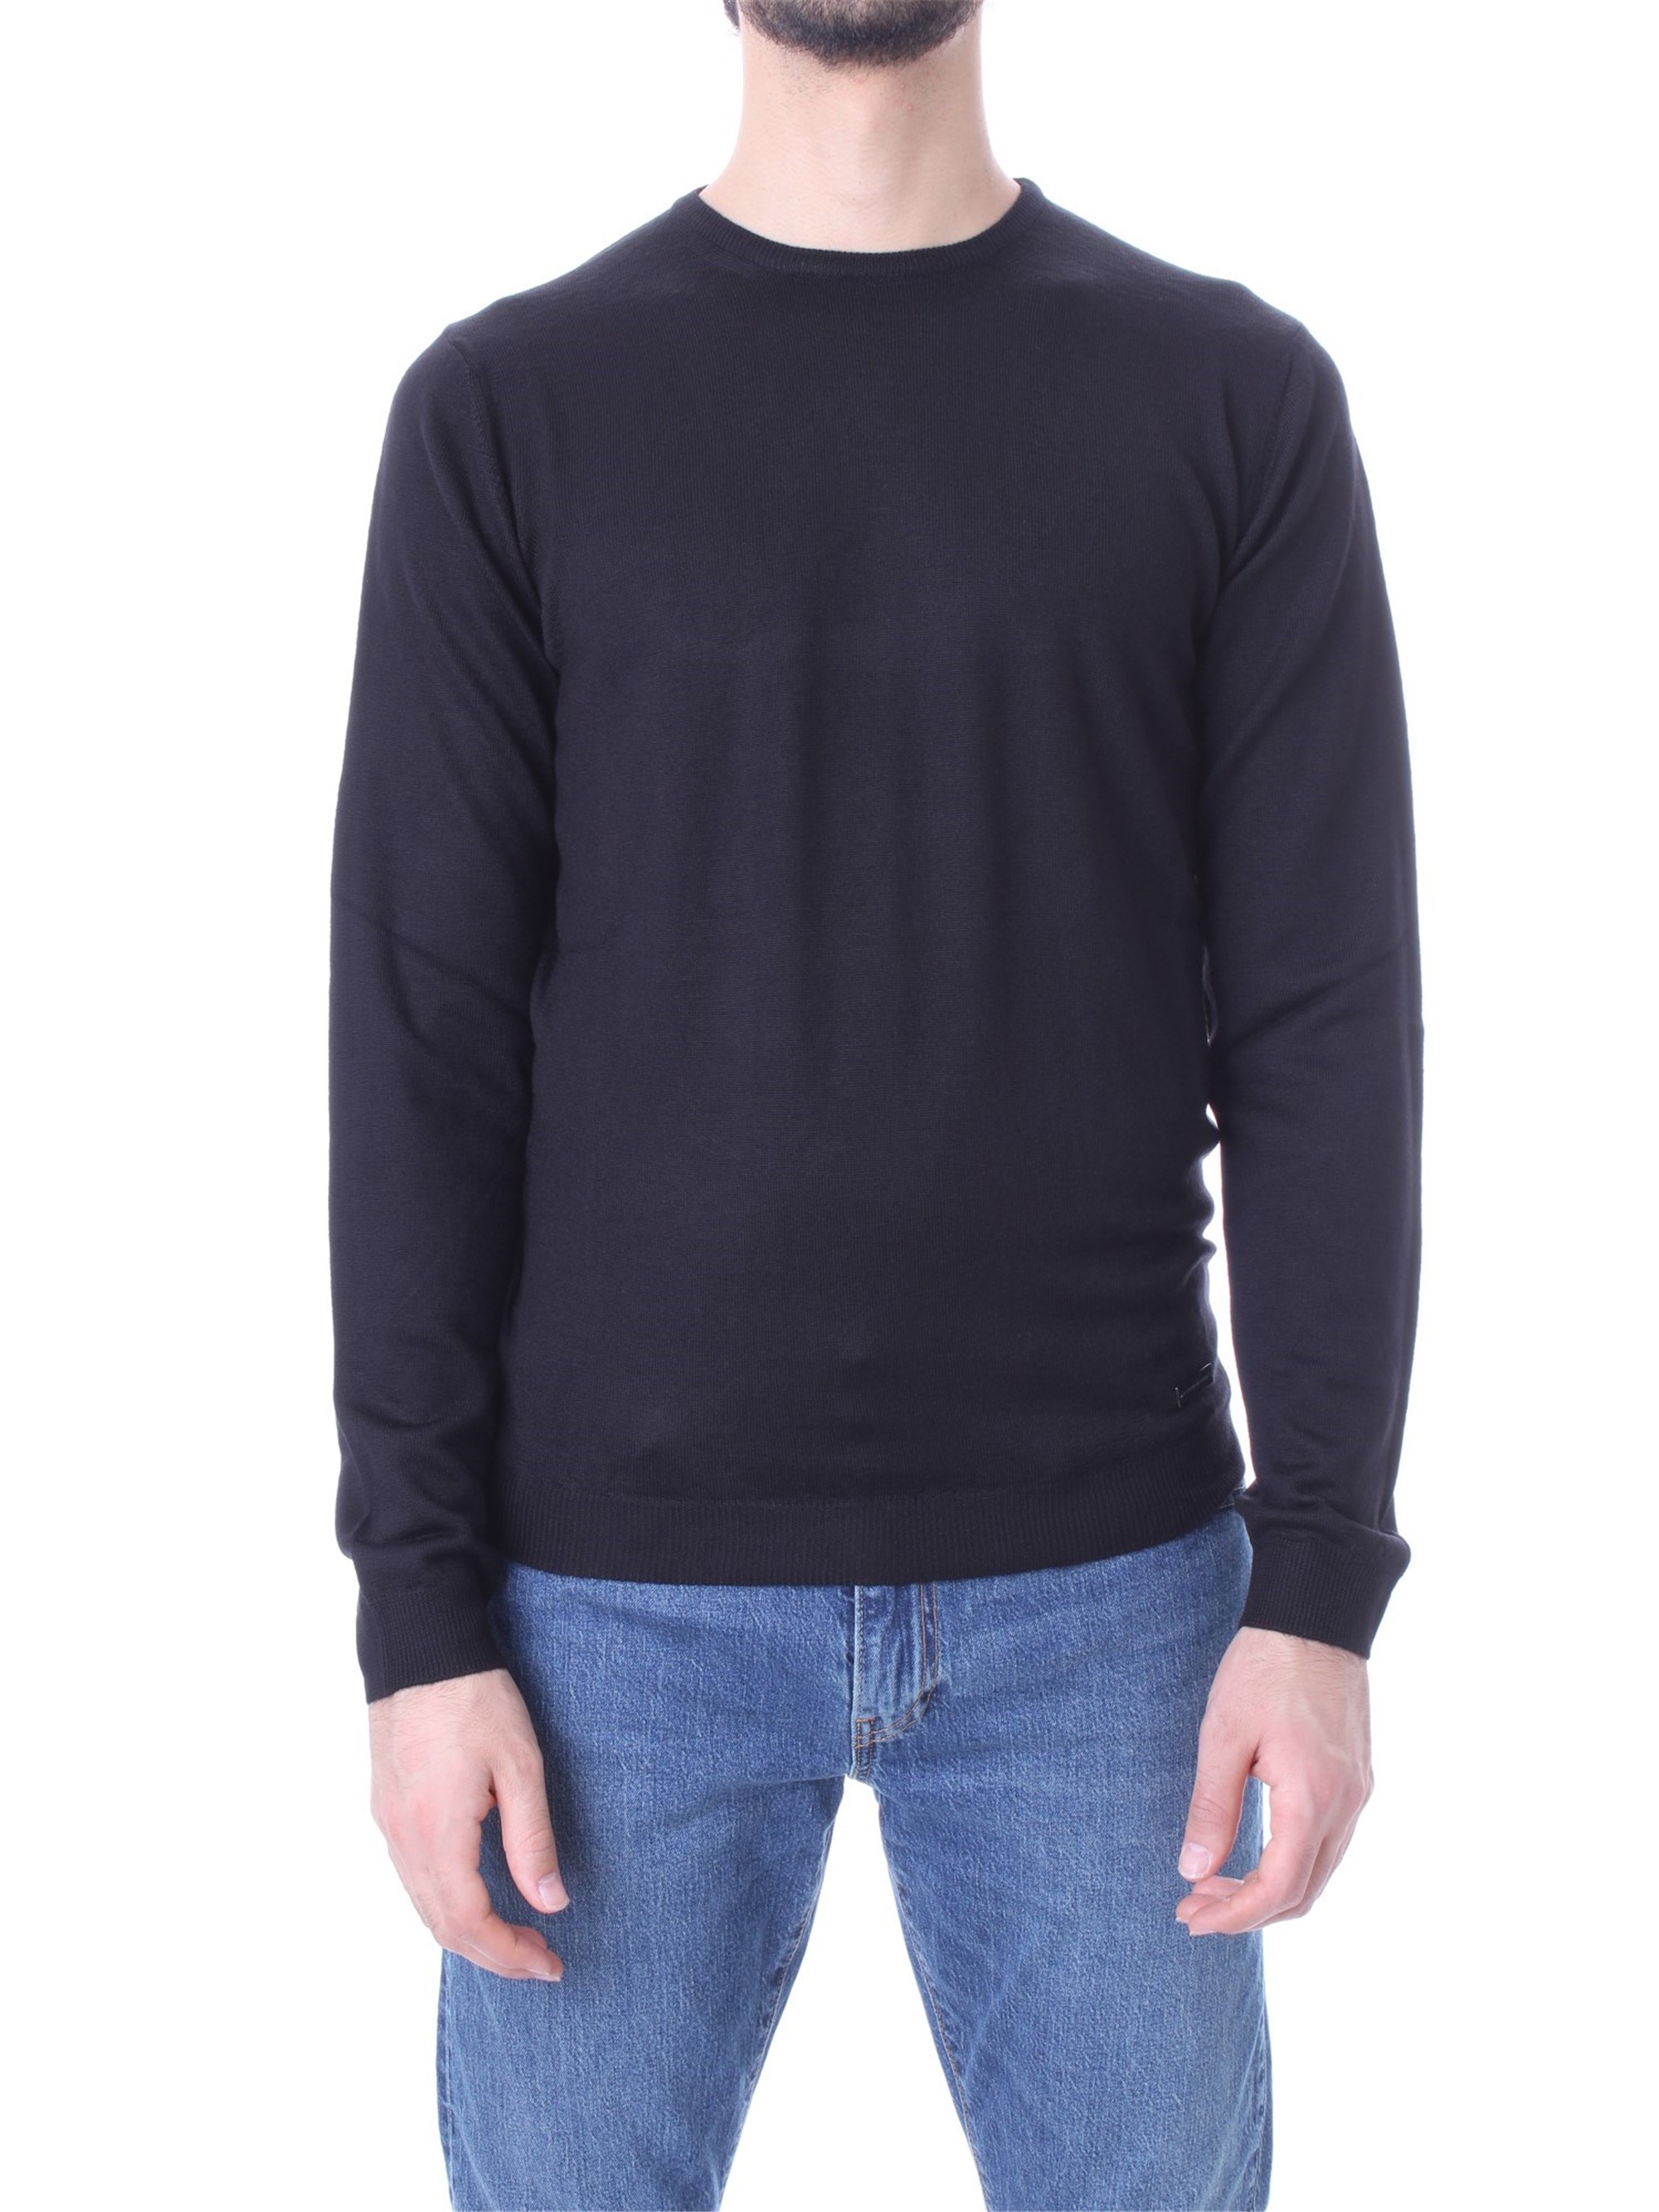 ALESSANDRO DELL'ACQUA Sweatshirt Herren schwarz lana acrilico günstig online kaufen